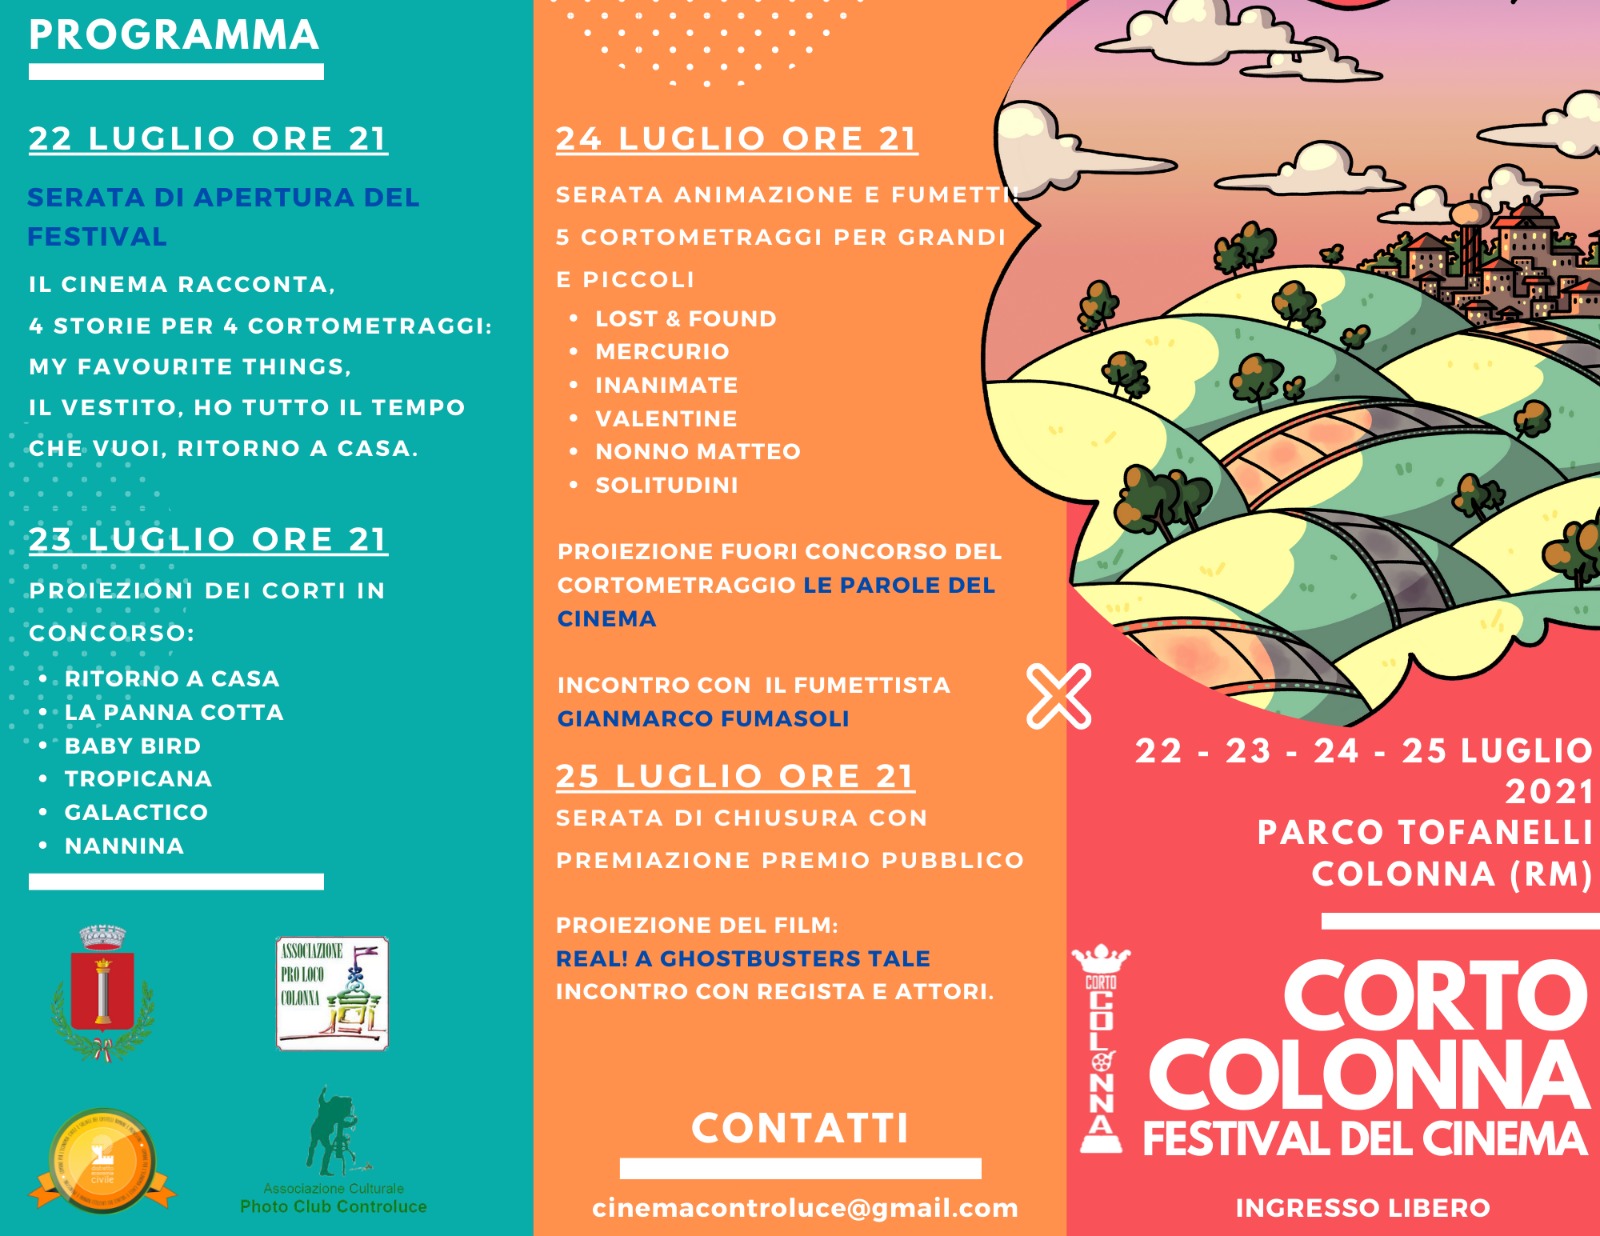 COLONNART 2021: CORTO COLONNA FILM FESTIVAL